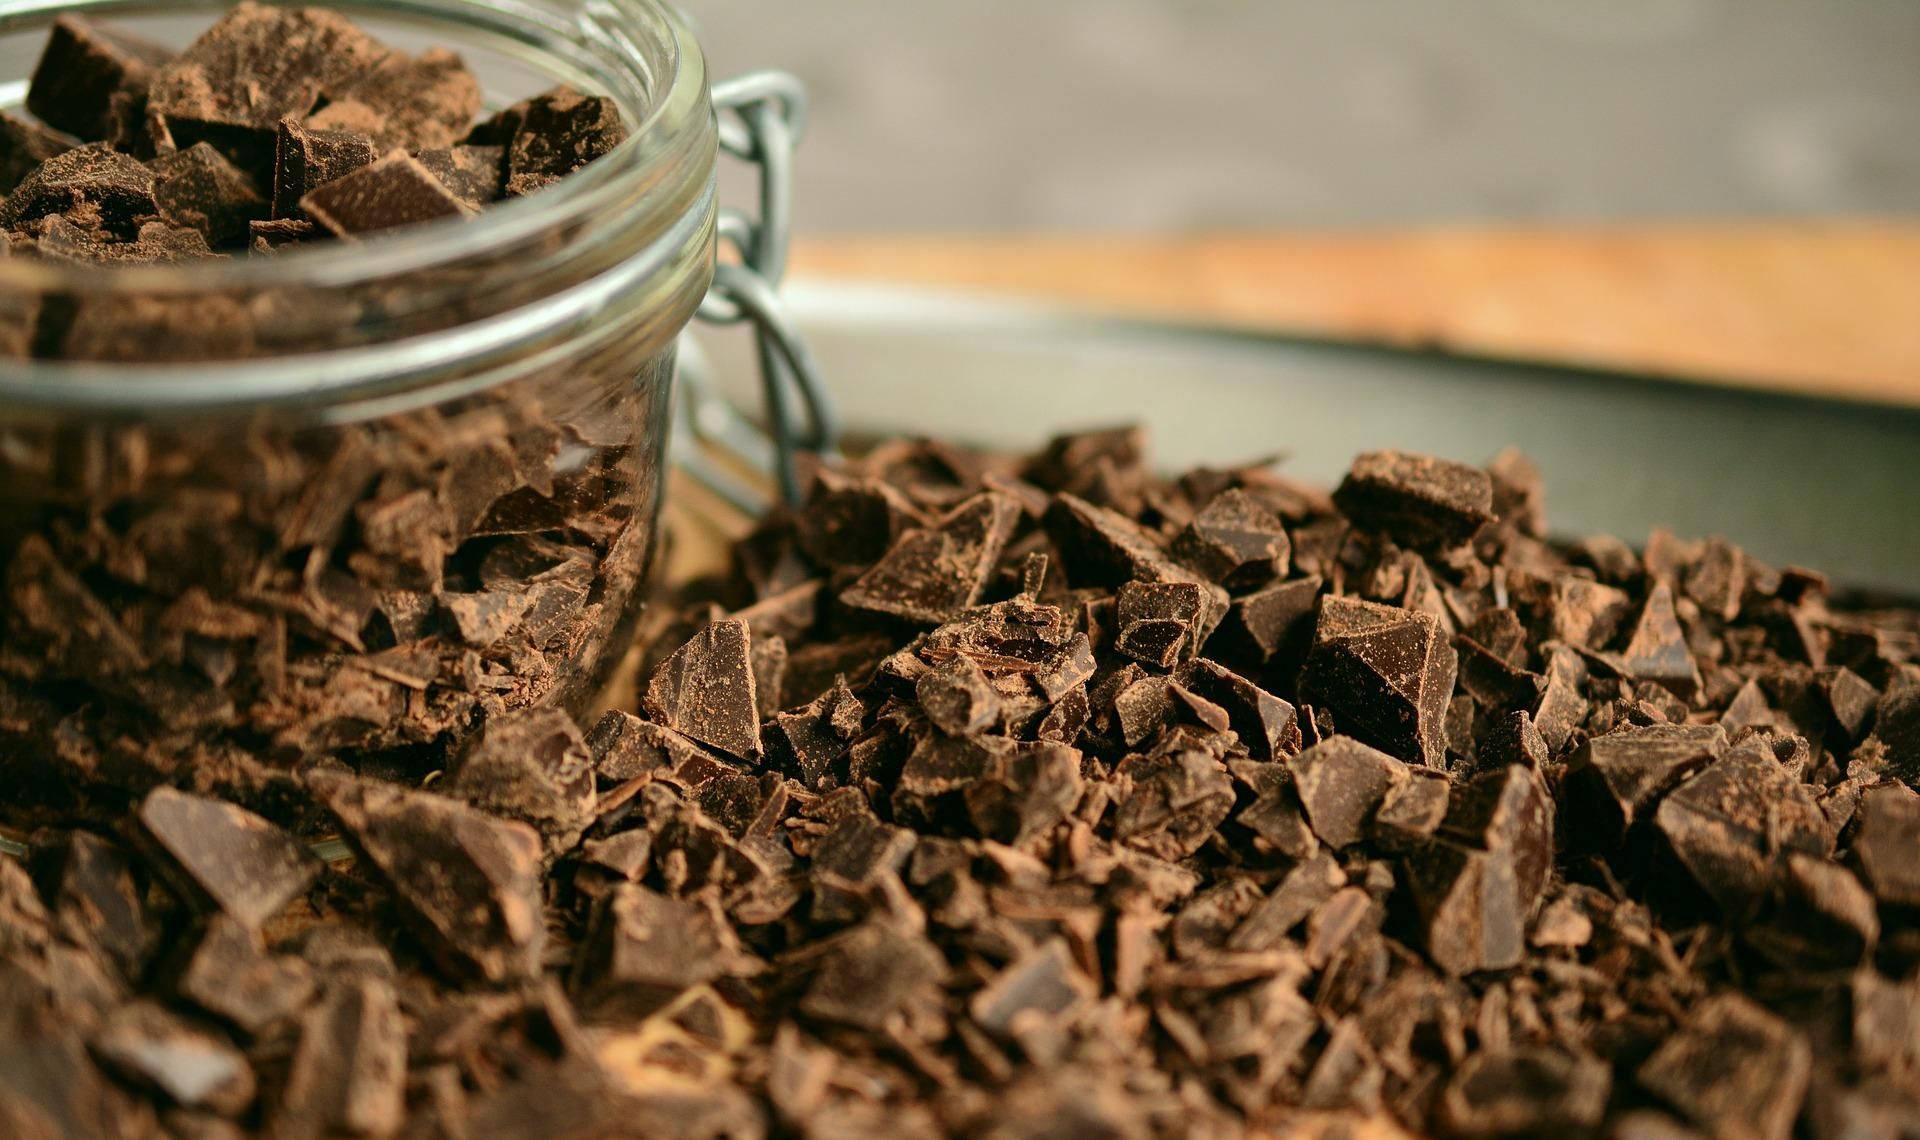 Шоколад при схудненні: як його правильно їсти, щоб не набрати вагу